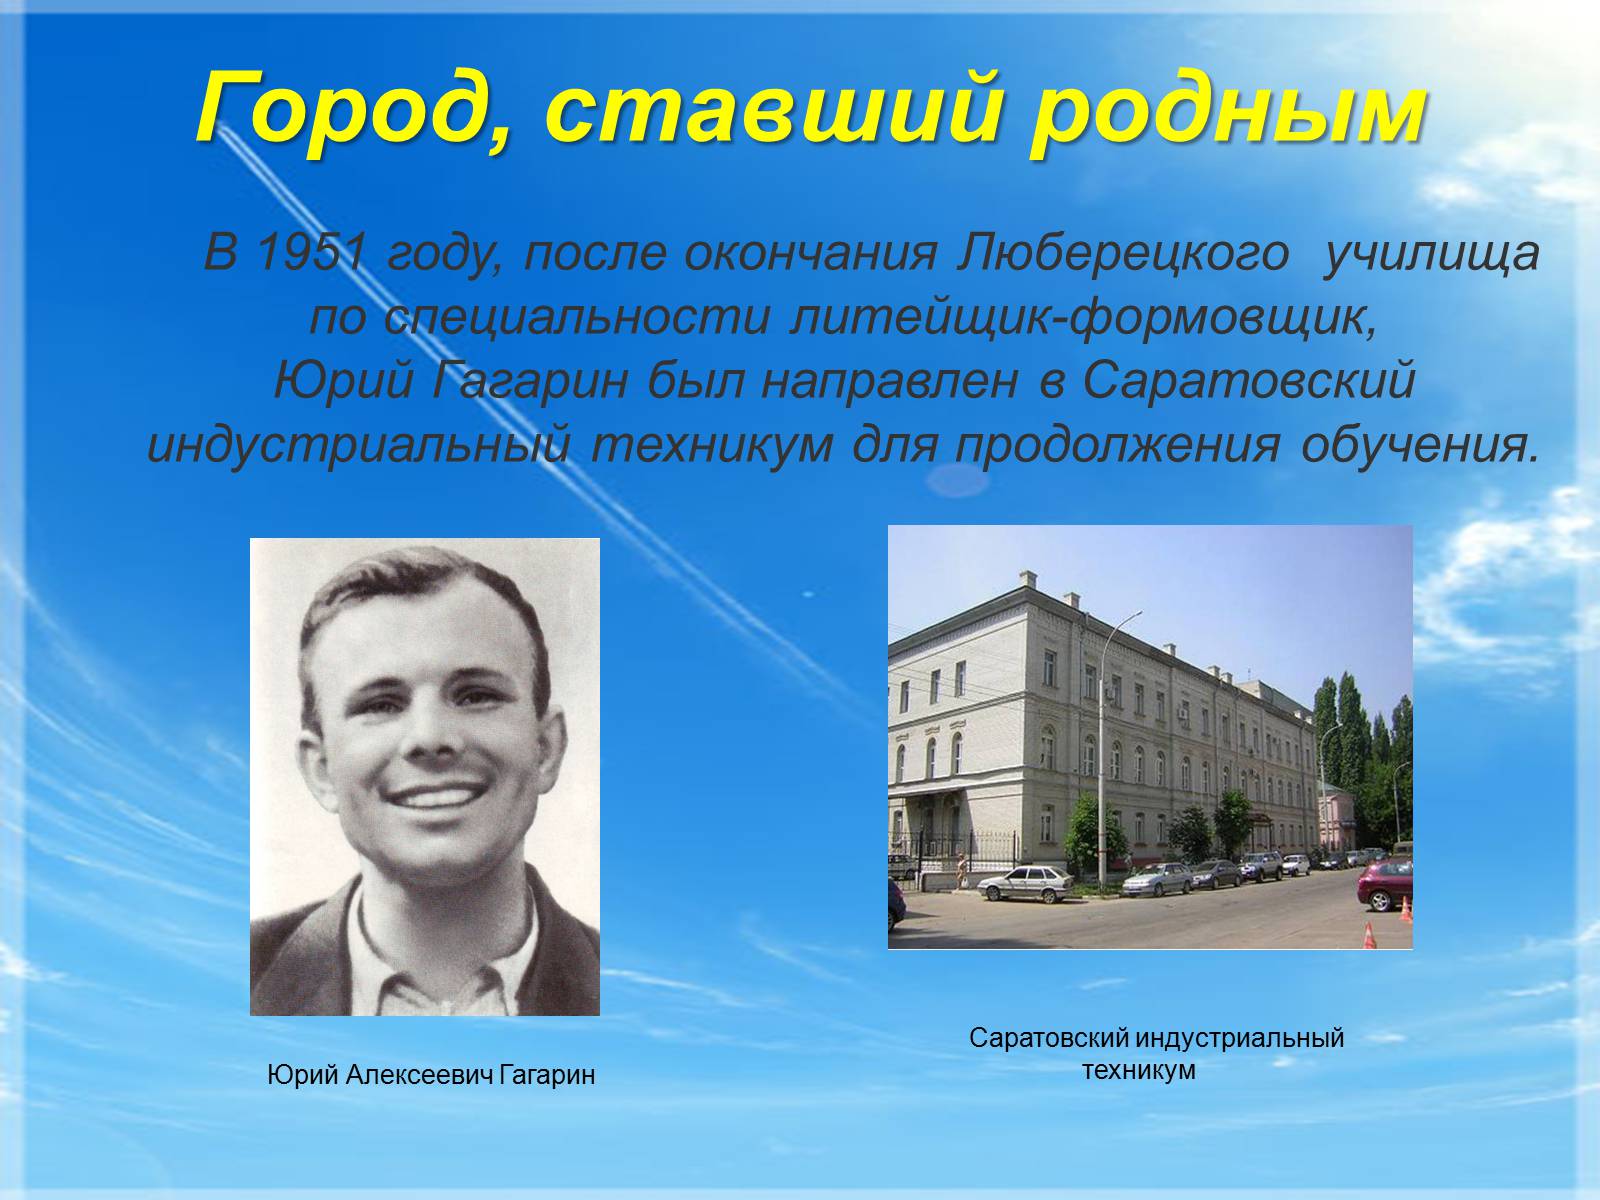 Город названный в честь гагарина. Гагарин в Саратовском Индустриальном техникуме. Гагарин 1951 Саратовском Индустриальном техникуме.